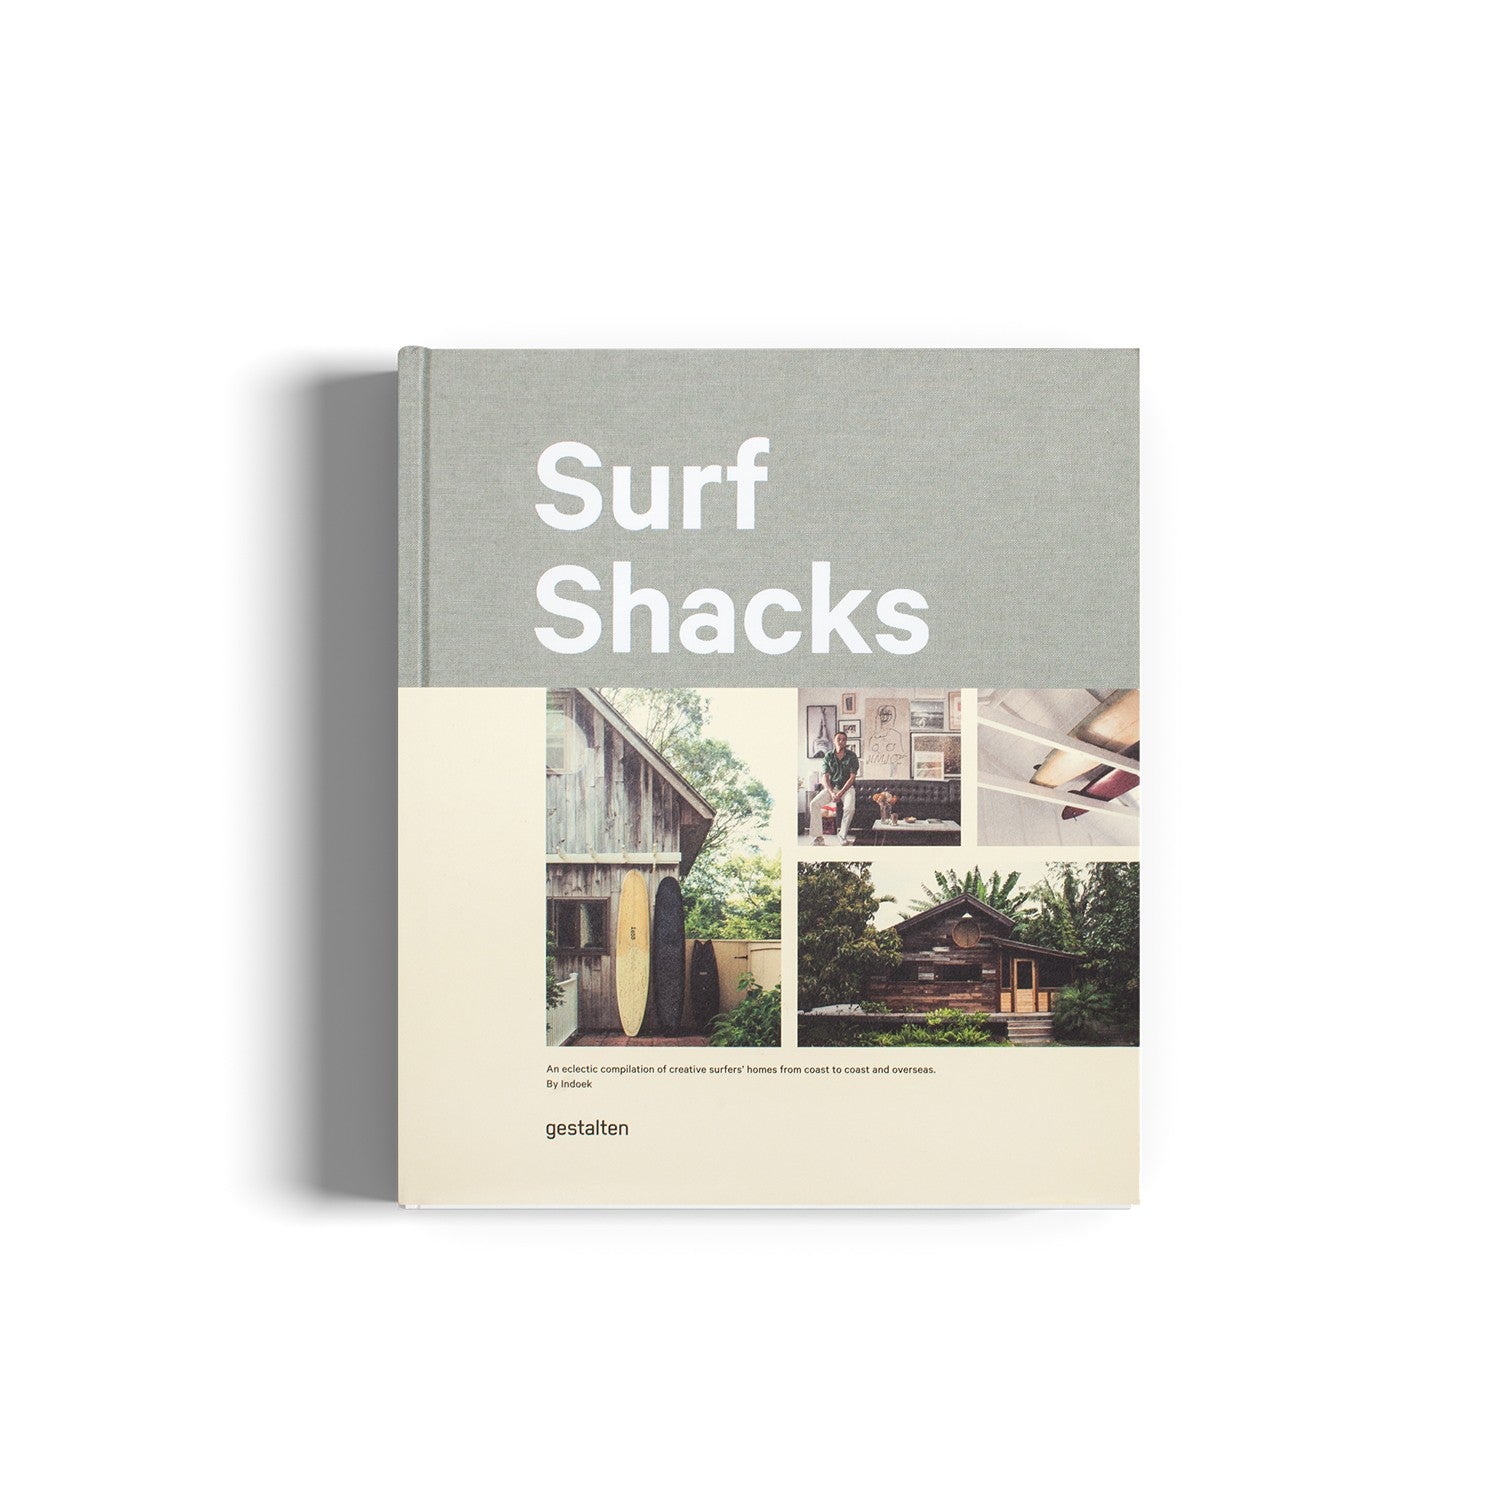 Surf Shacks Vol.1, Creative surfers' homes